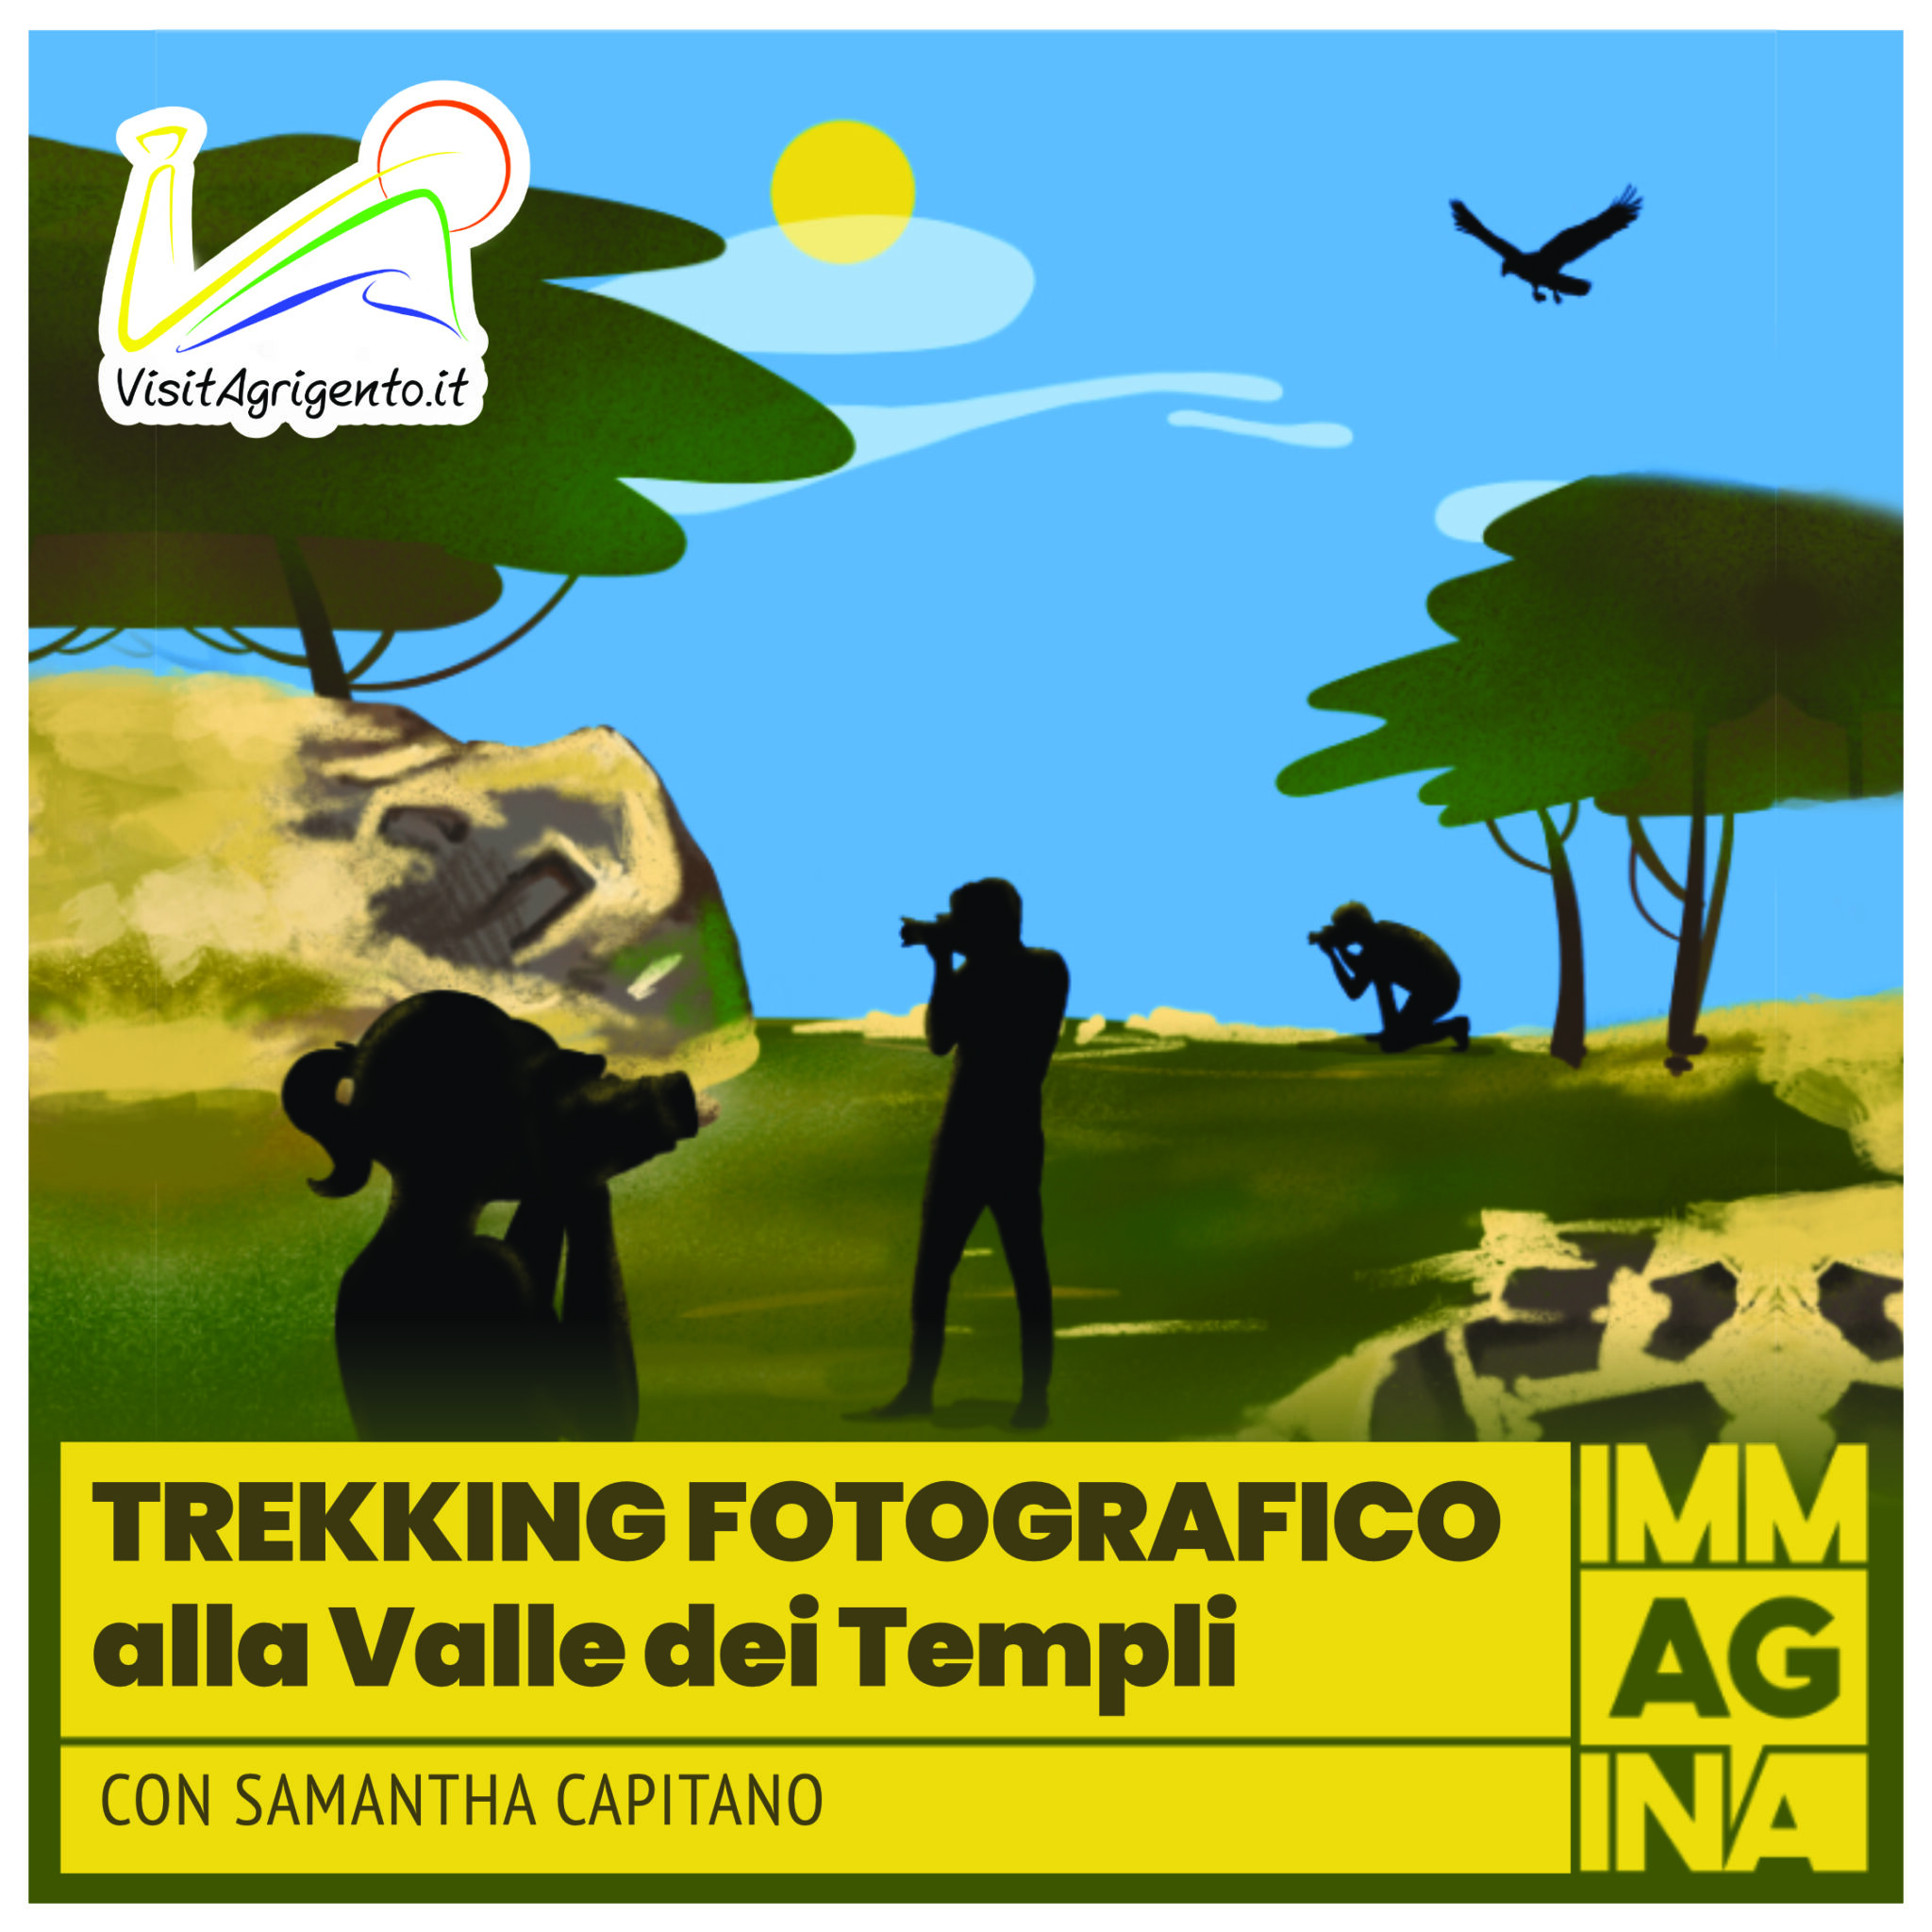 Al momento stai visualizzando Trekking Fotografico alla Valle dei Templi